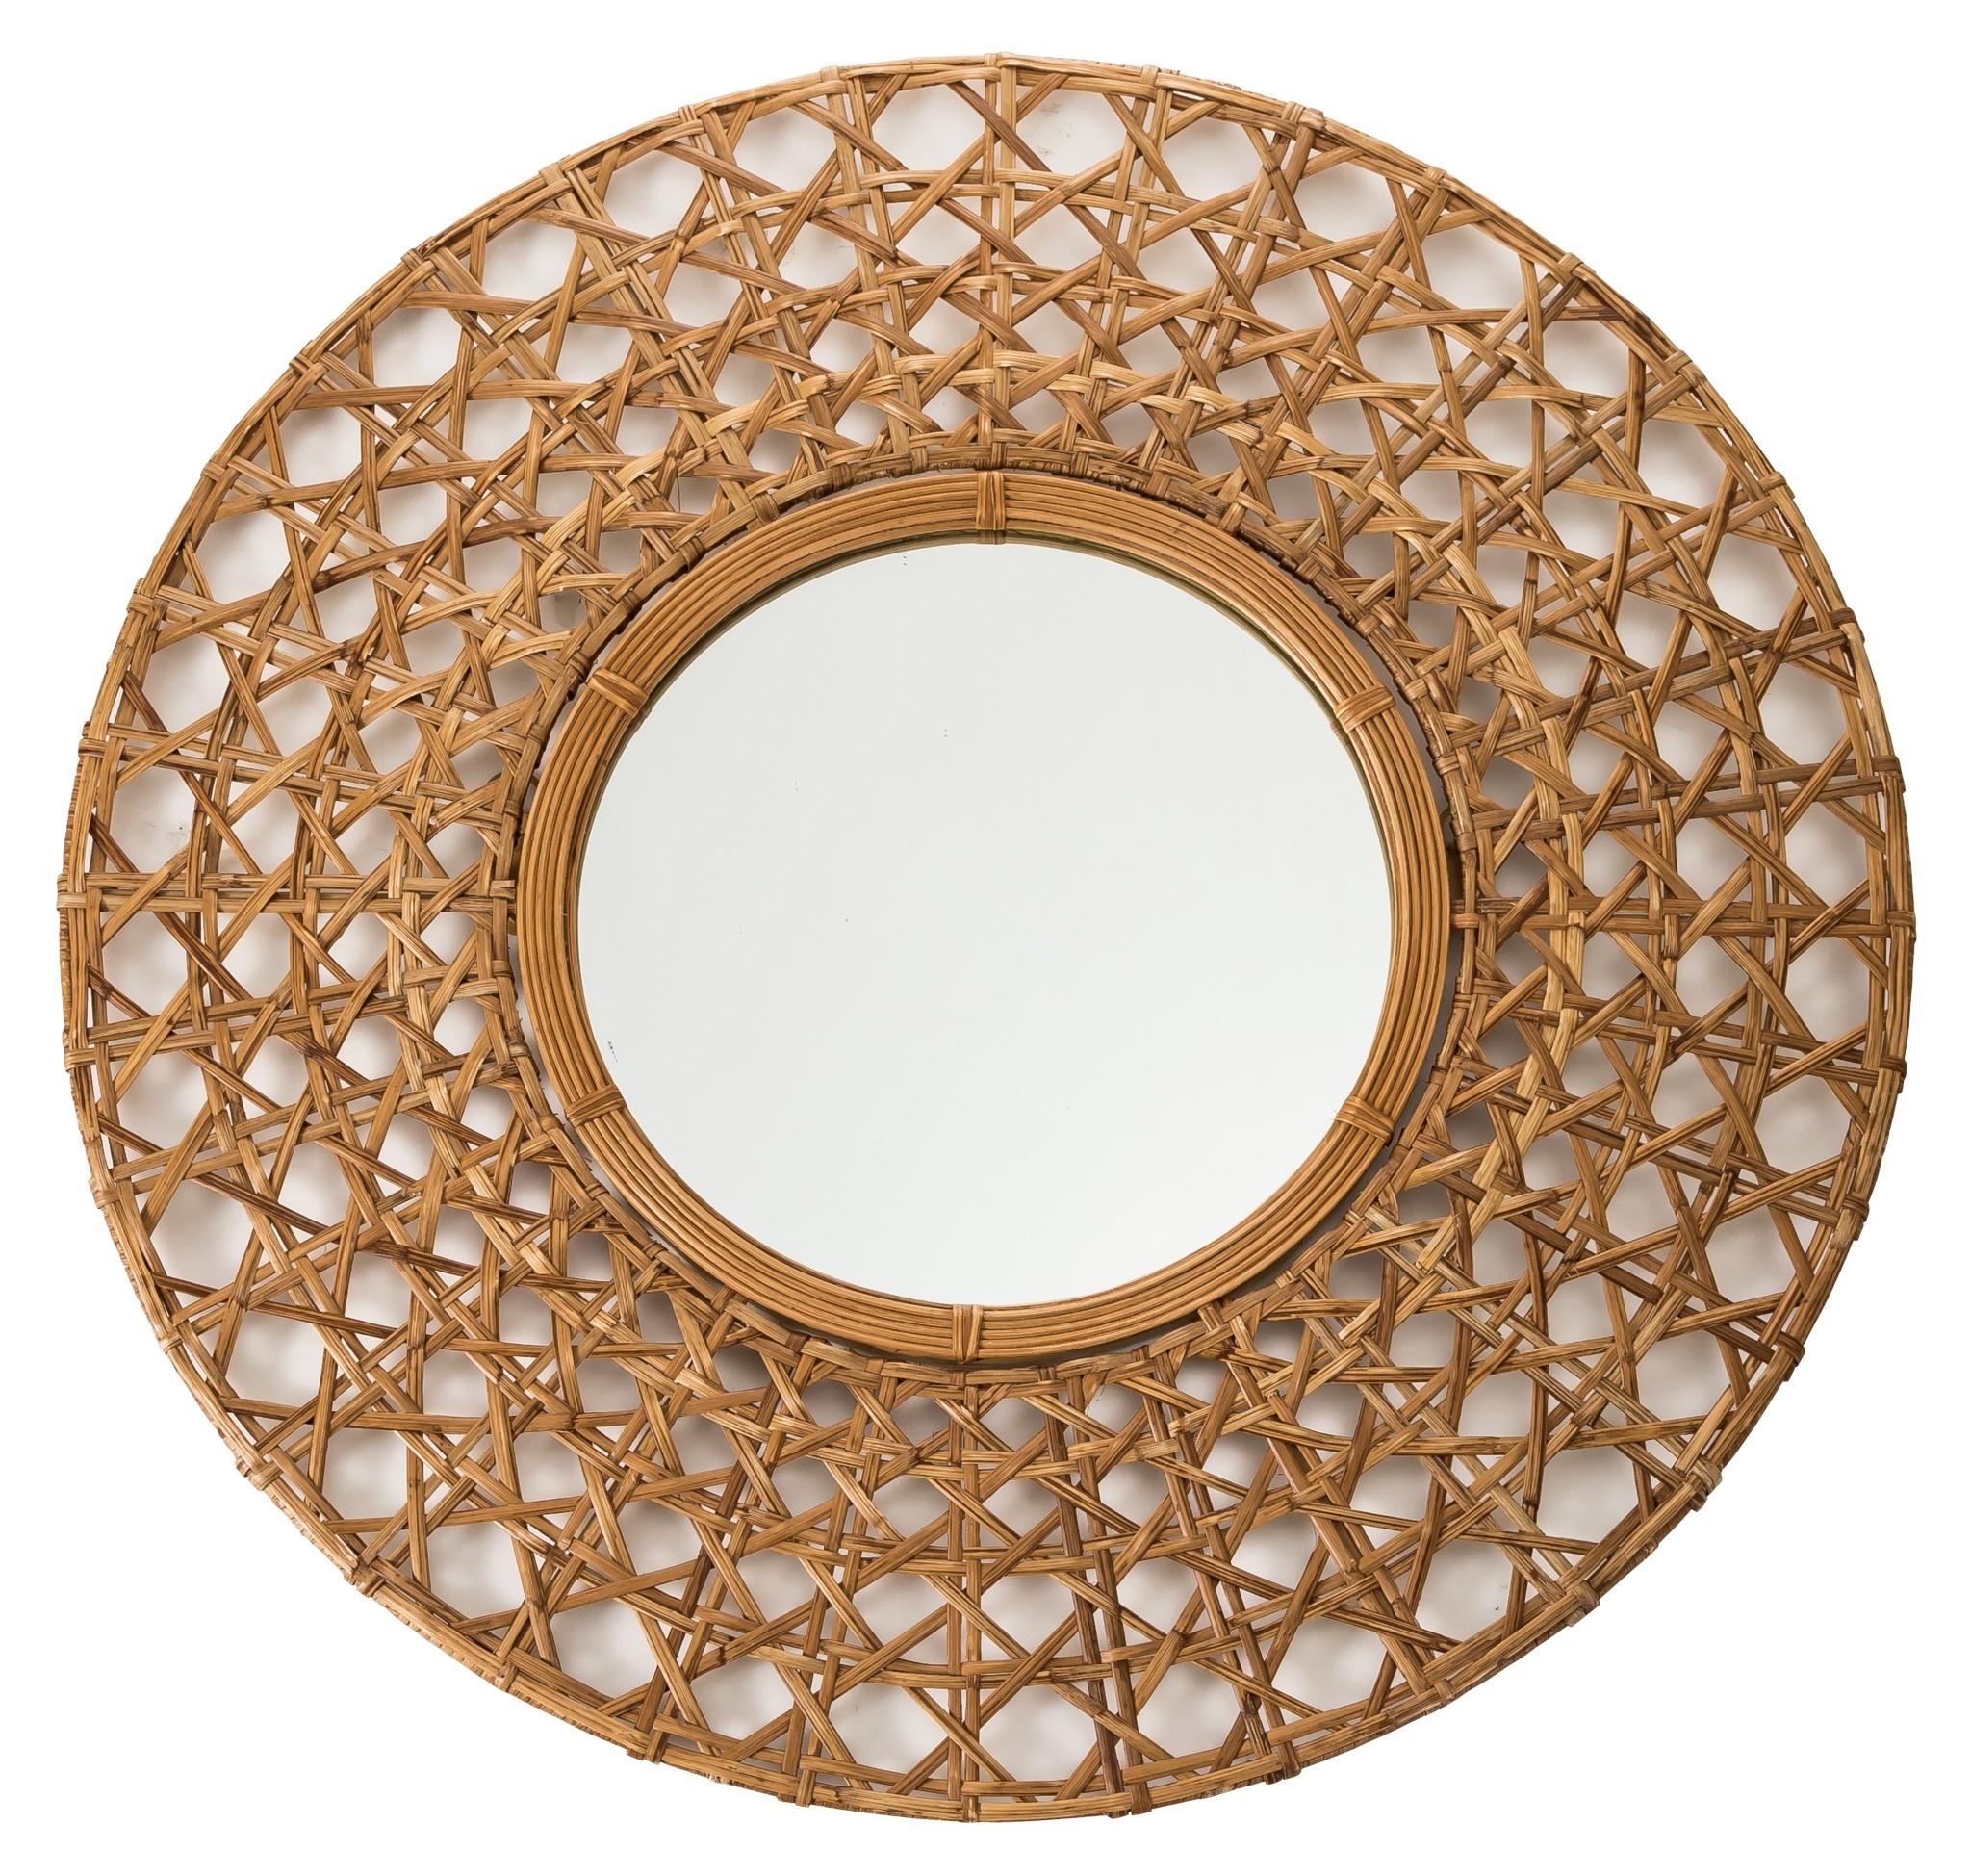 Specchio da Parete Rotondo con Cornice Tapnigi Intrecciata a Mano D70x -  Orientique - Asianliving